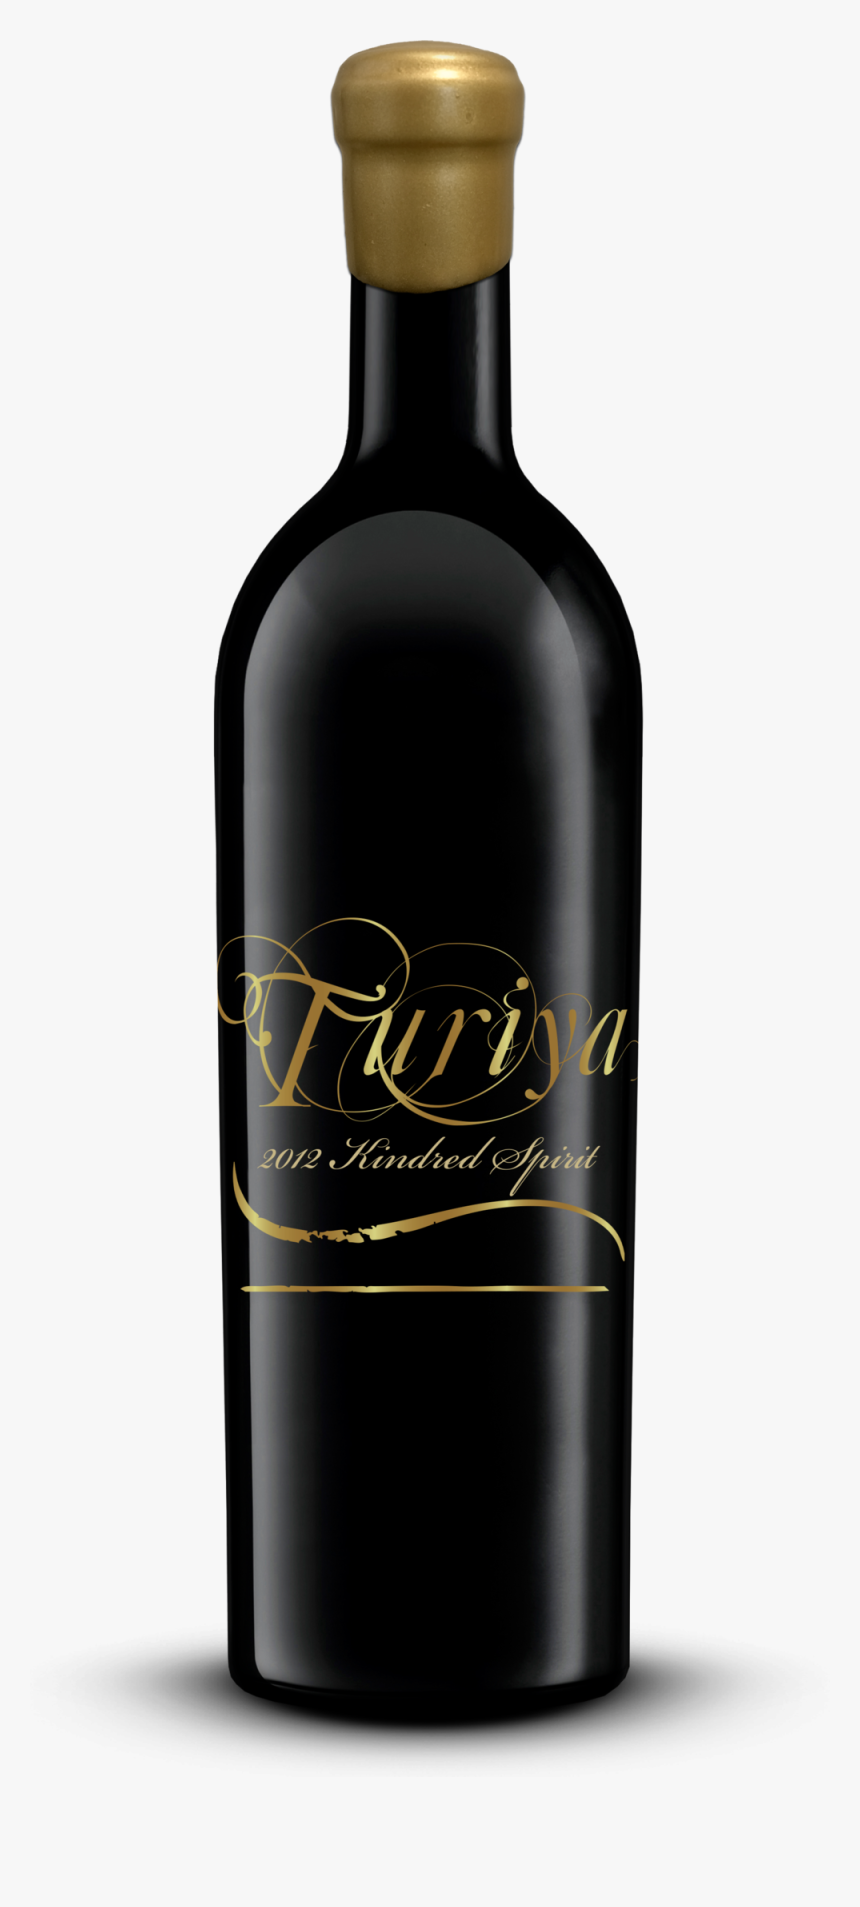 2012 Kindred Spirit - Wine Bottle, HD Png Download, Free Download